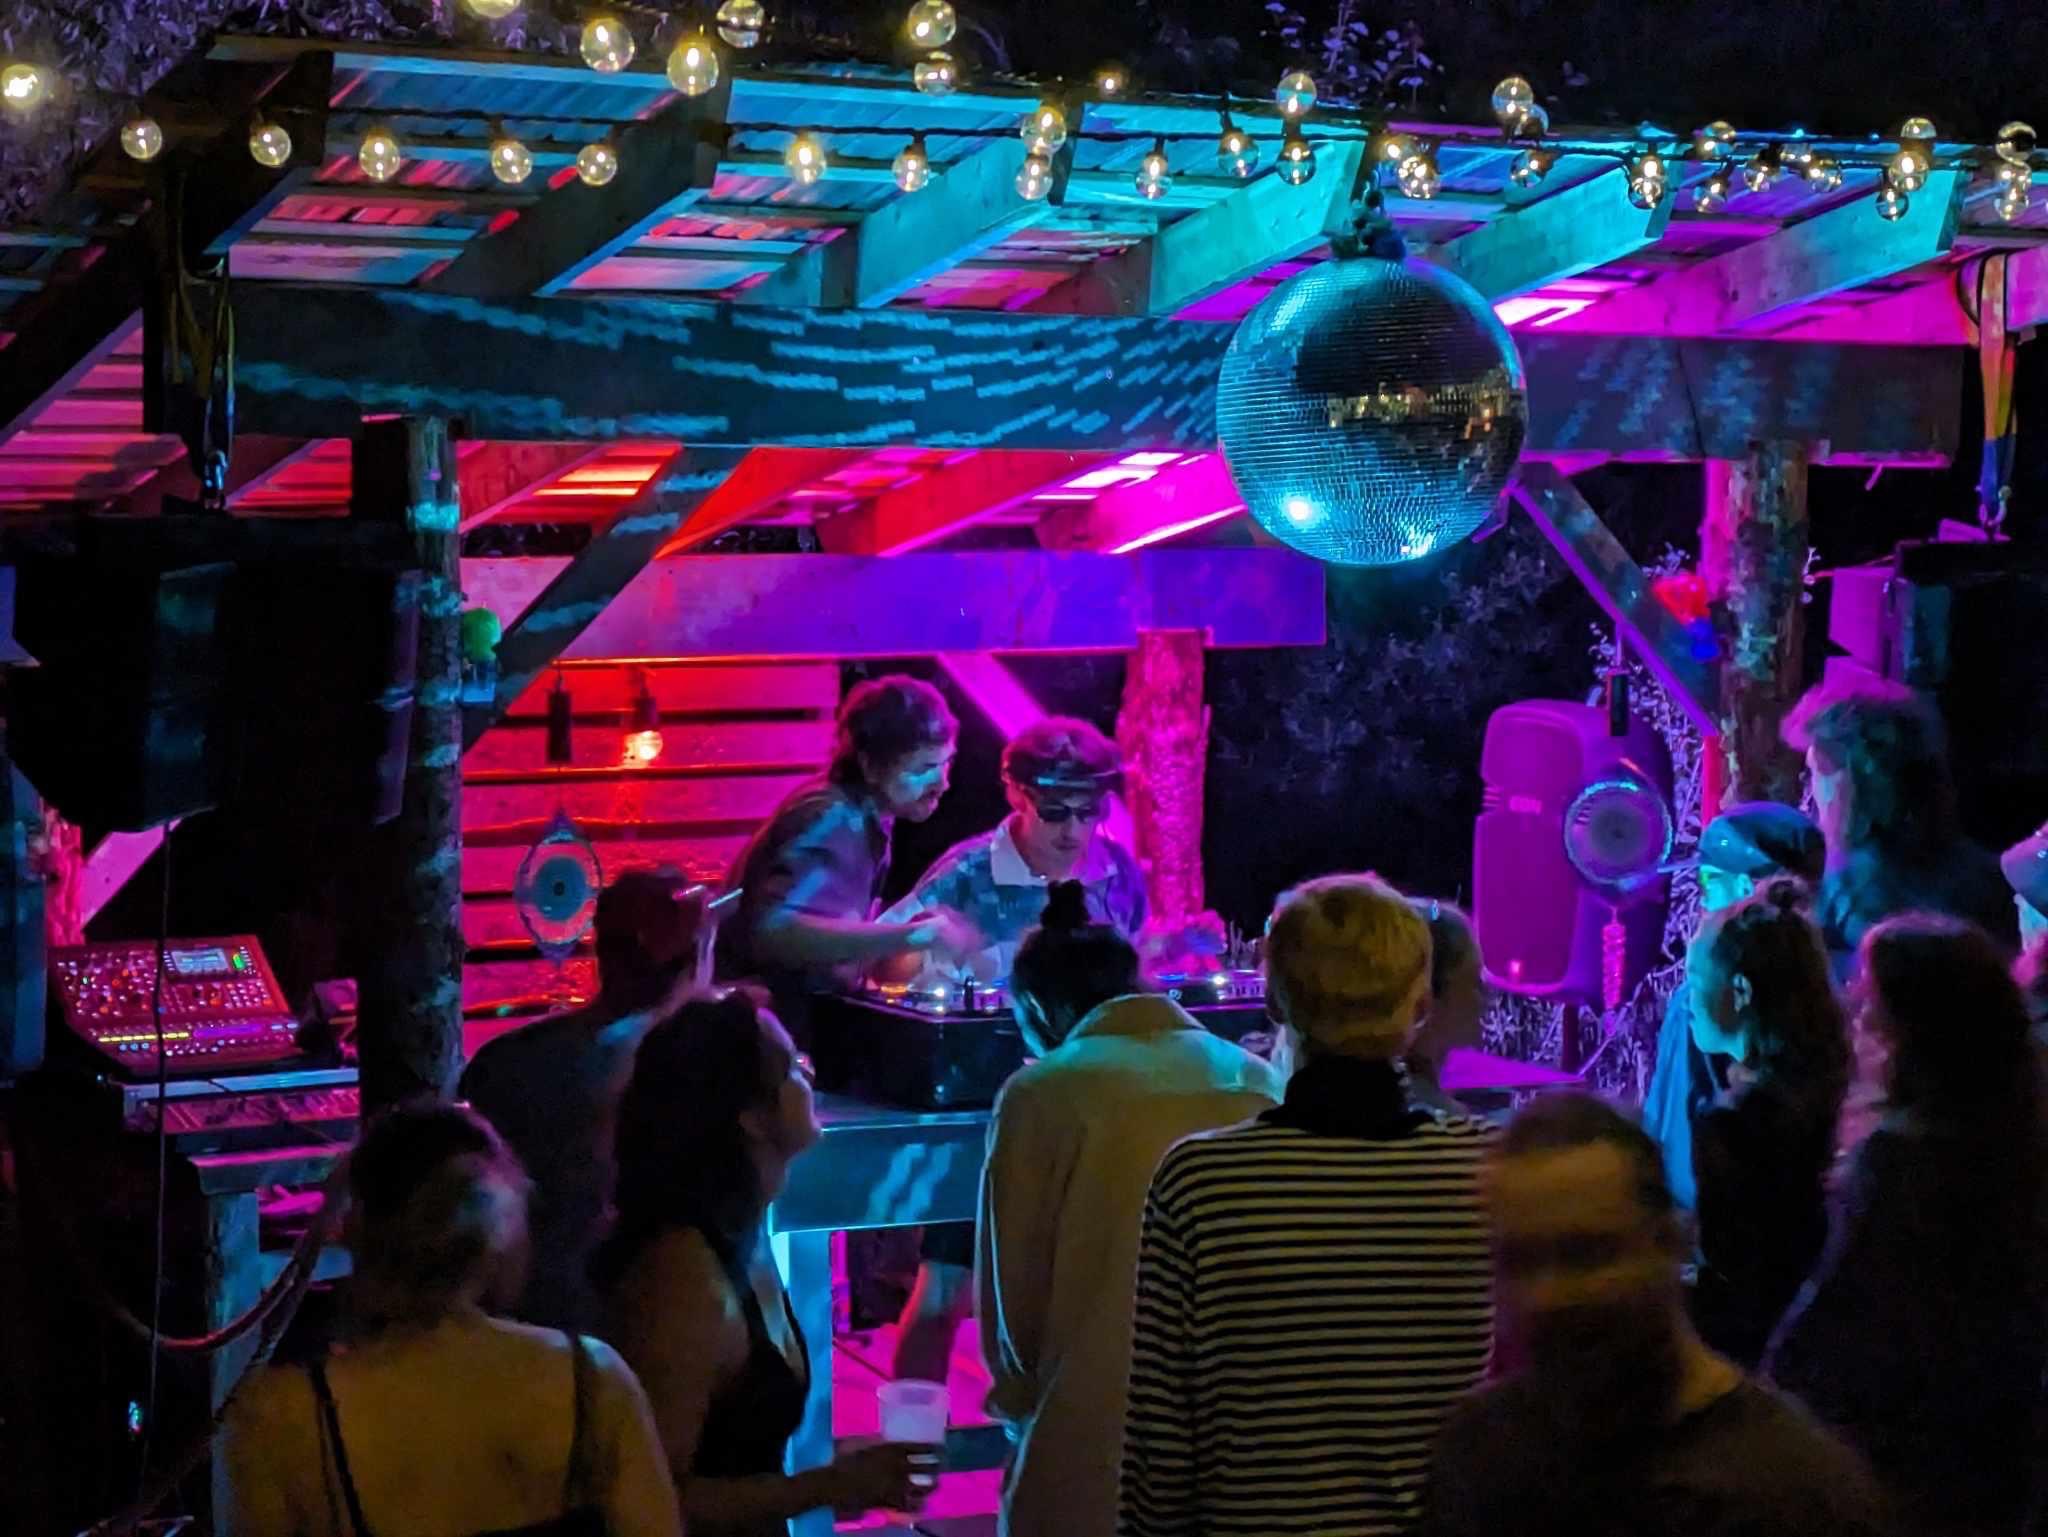 Vue sur un DJ booth avec 2 DJ à la console, éléments d'éclairage de scène extérieure, énorme boule disco au-dessus et plusieurs danseurs prêts du DJ booth, sur fonds d'éclairage nocturne rose, mauve et bleu